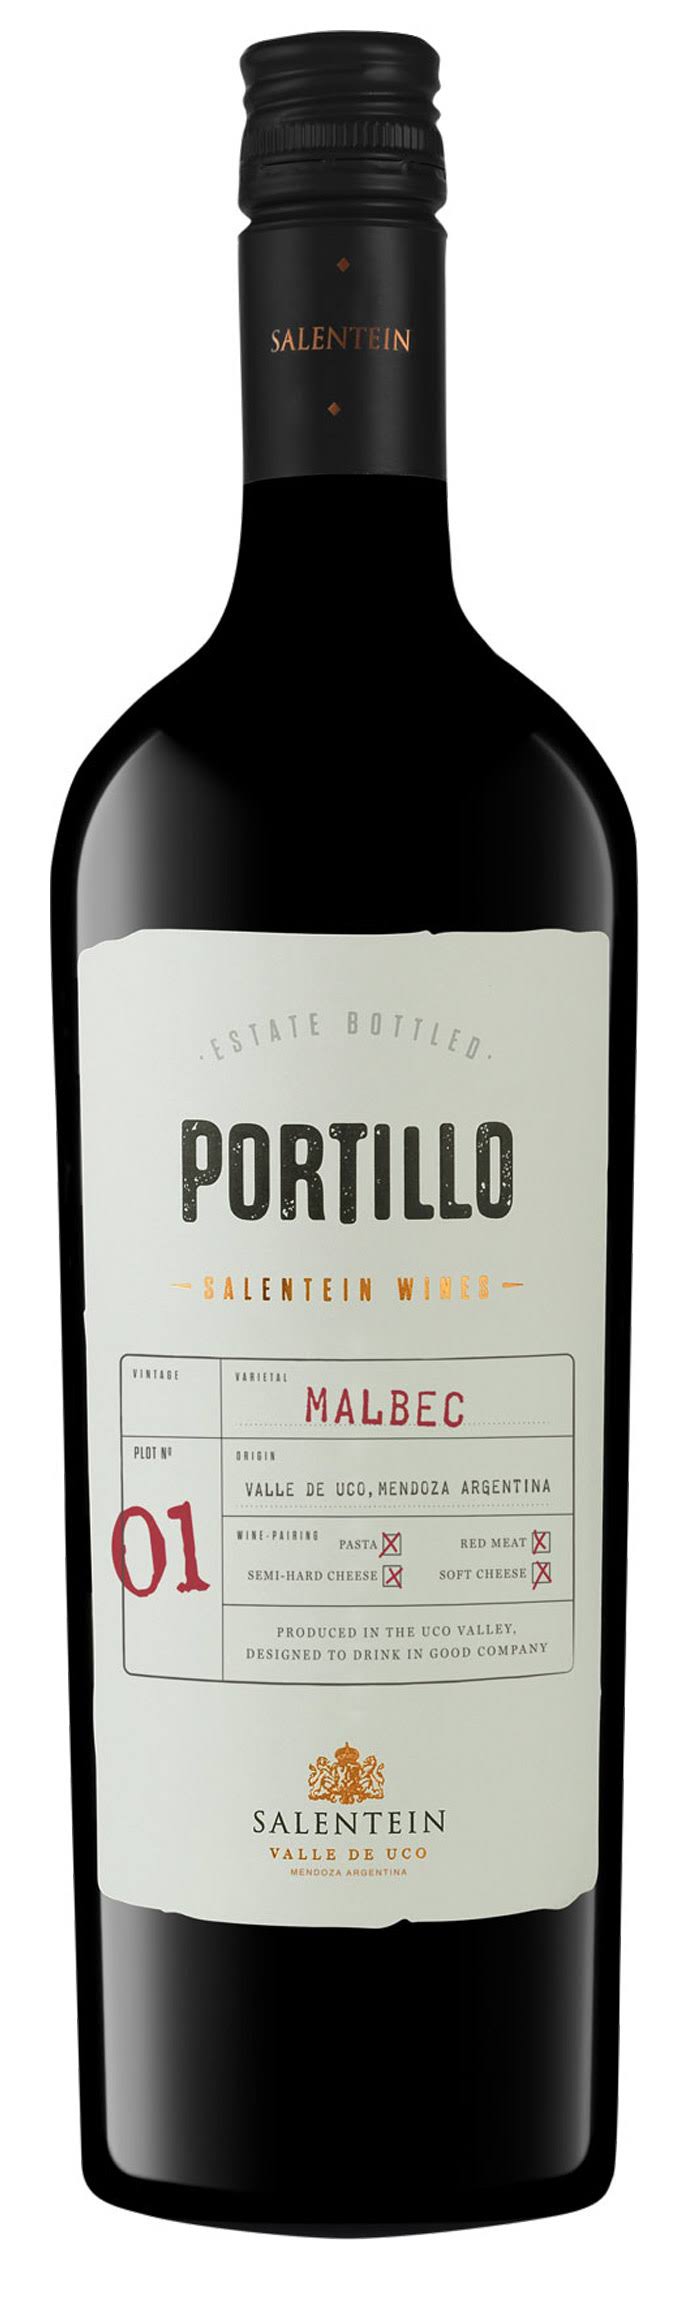 Portillo 2012 Malbec - 750ml